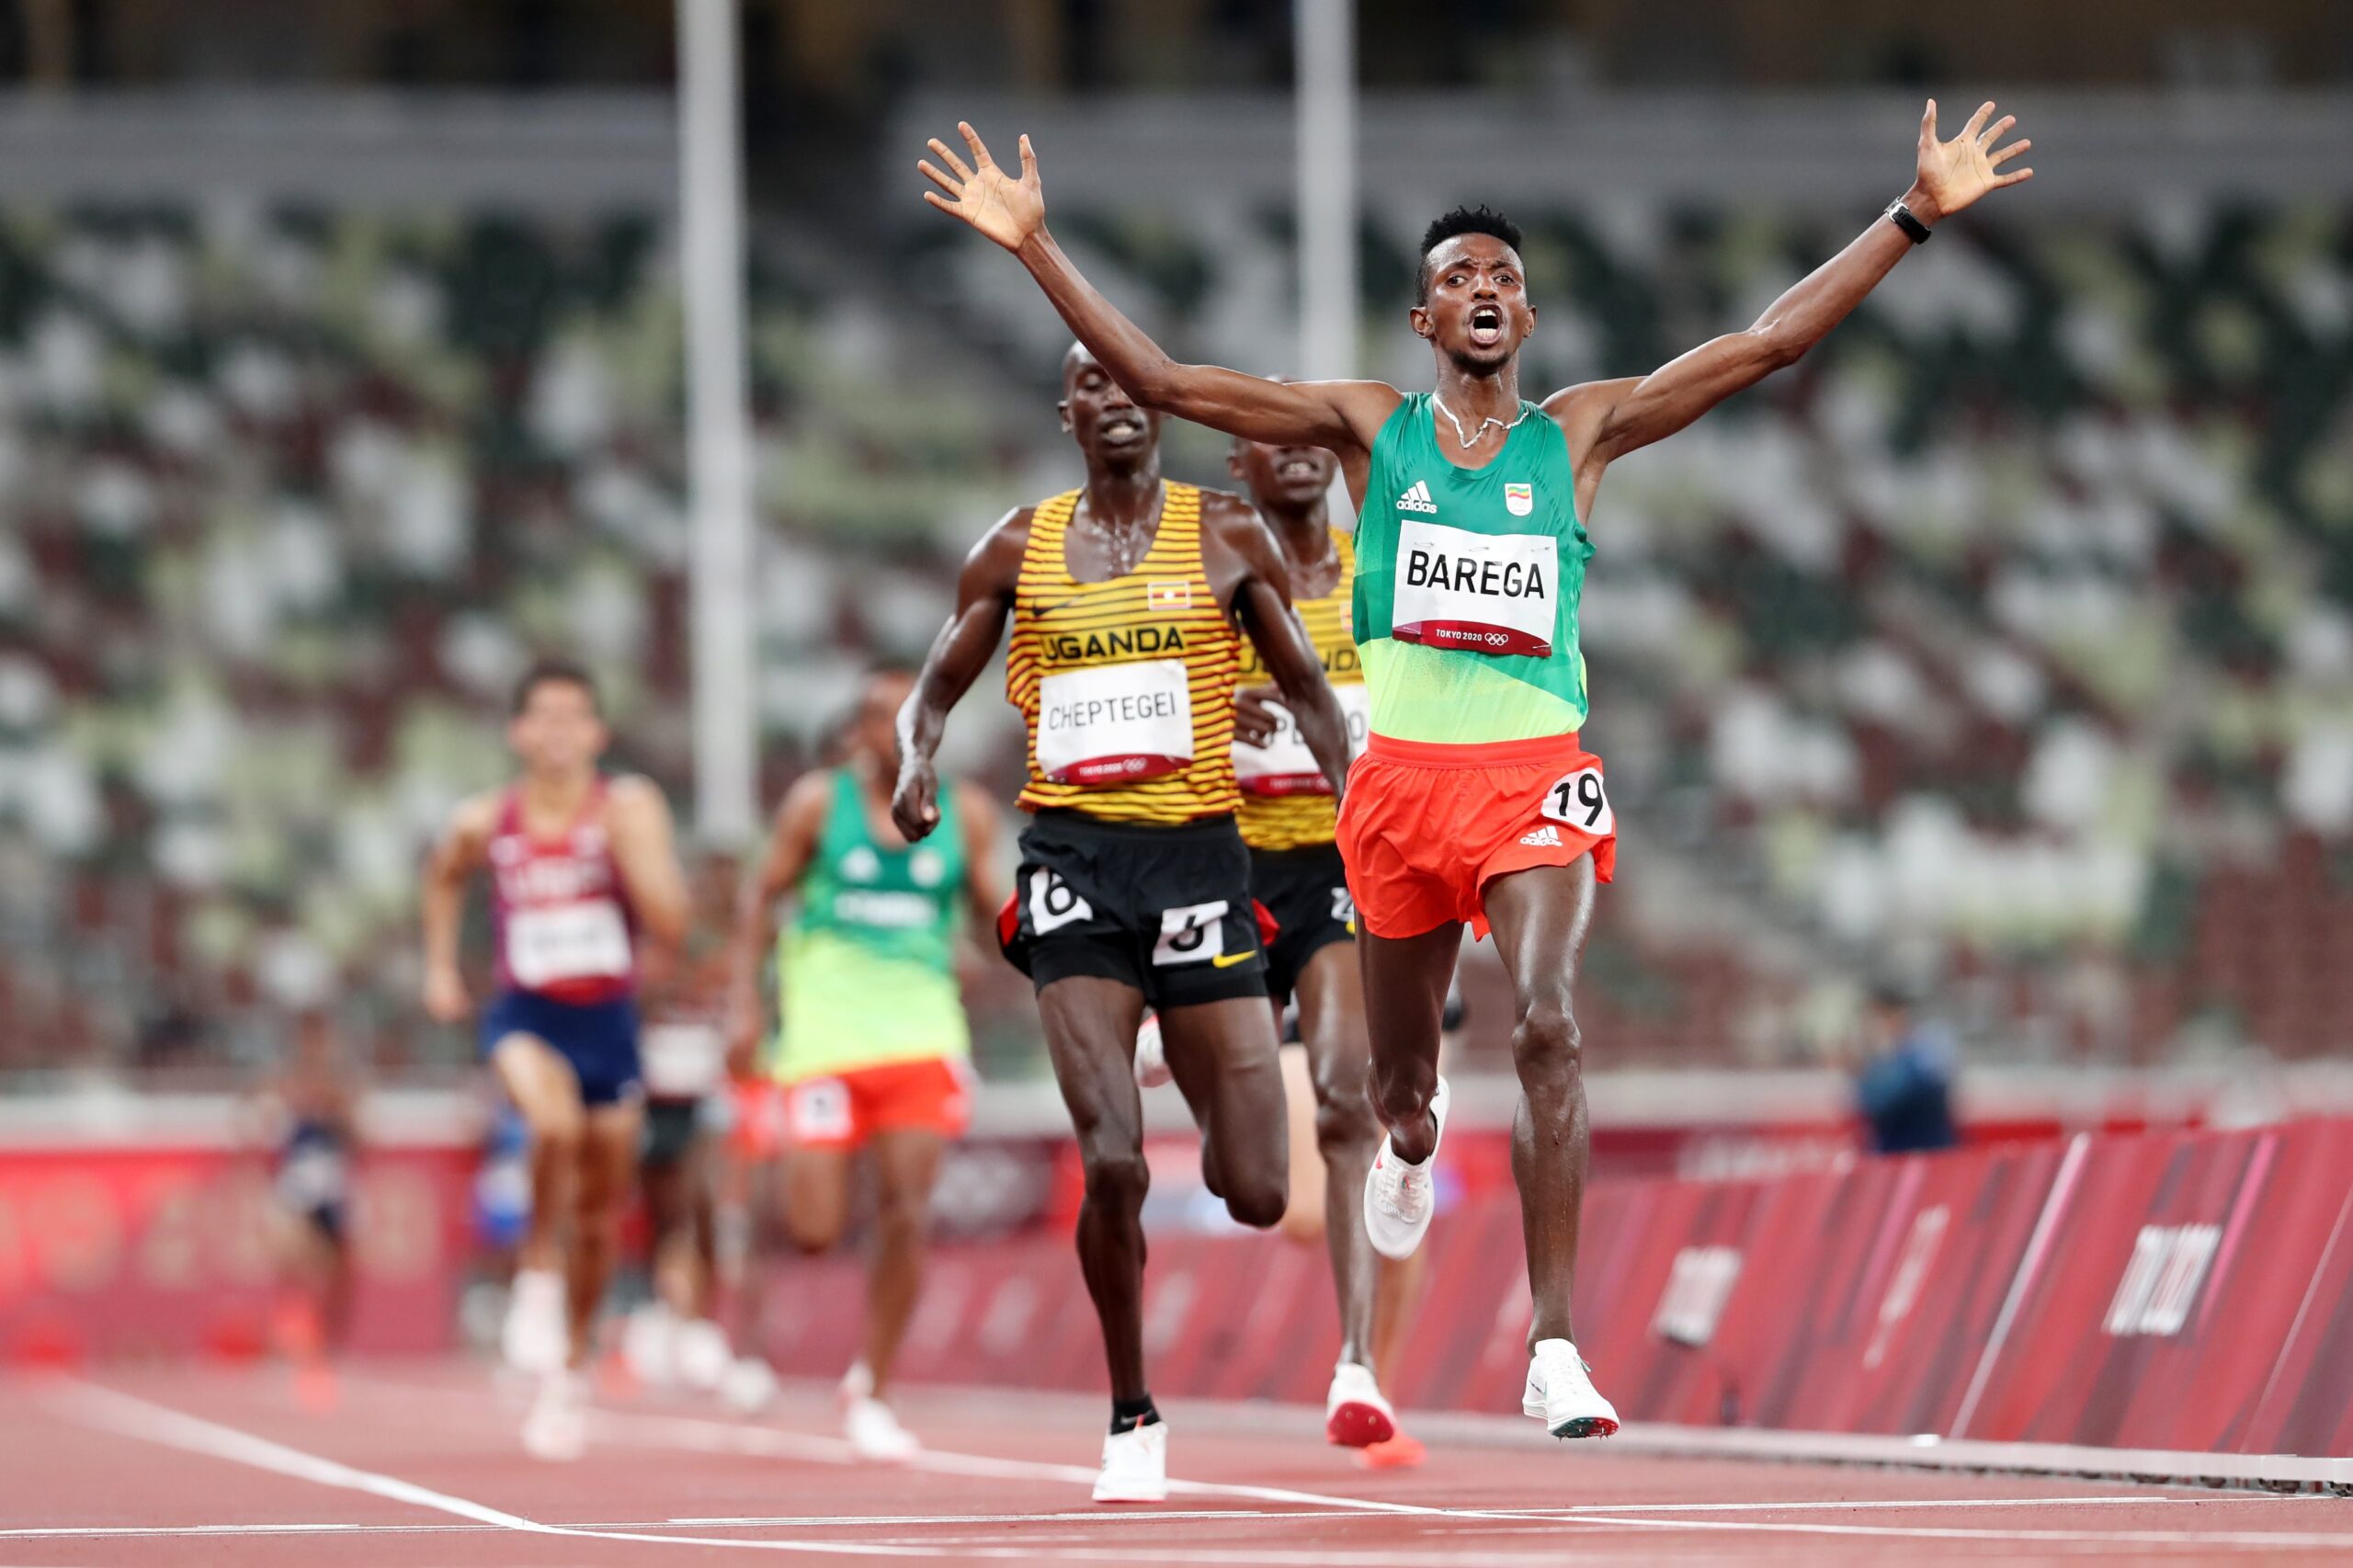 10000 metros: El etíope Barega le gana a Cheptegei y a Kiplimo y es oro